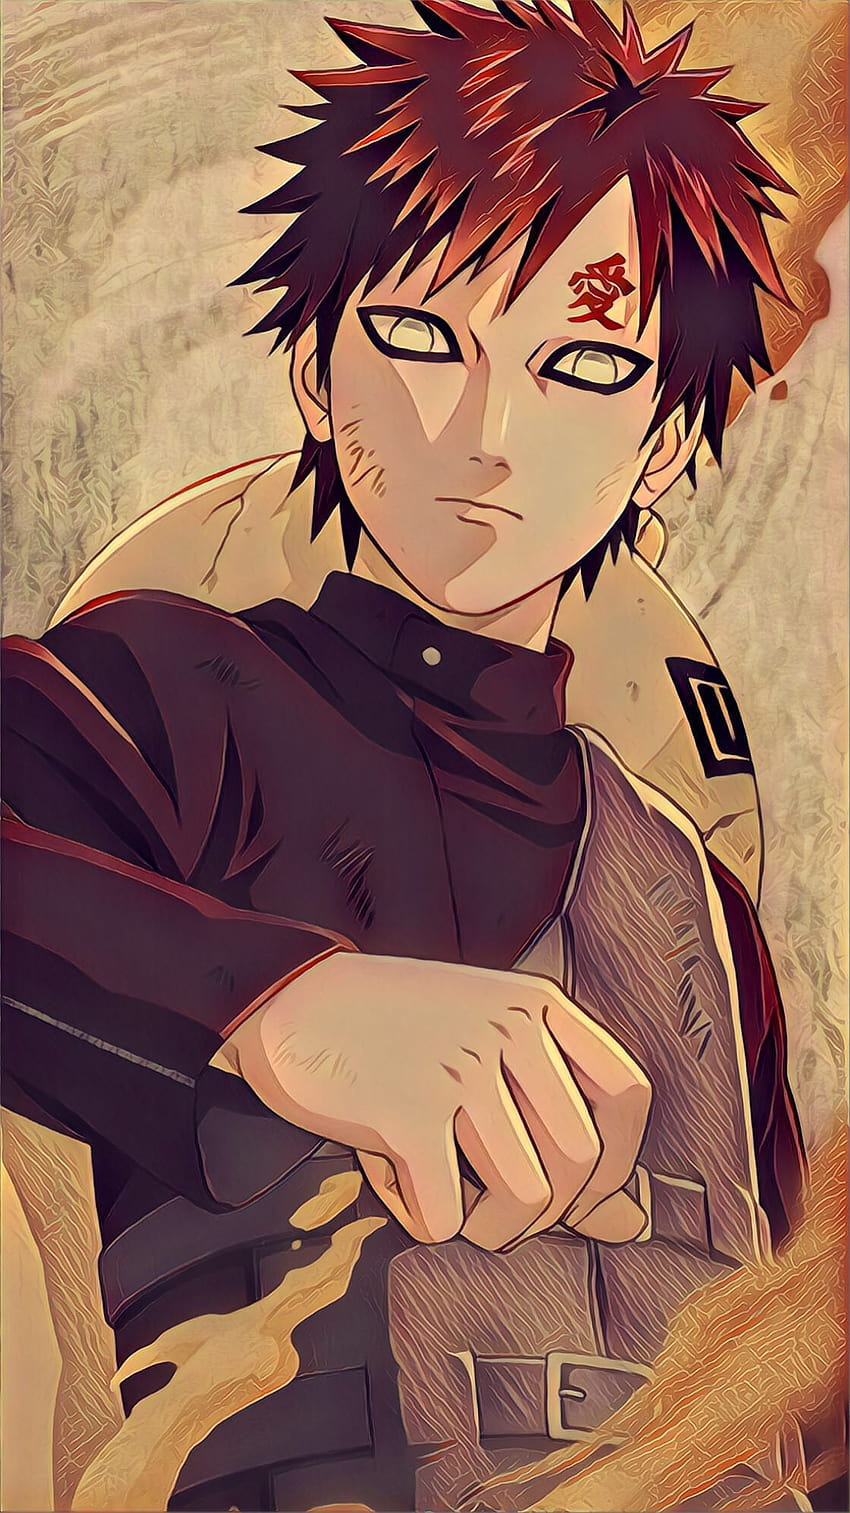 Hình nền  hình minh họa Gaara Thần thoại Naruto Ảnh chụp màn hình  Nhân vật hư cấu Kazekage 2953x1800  wallhaven  556045  Hình nền đẹp hd   WallHere